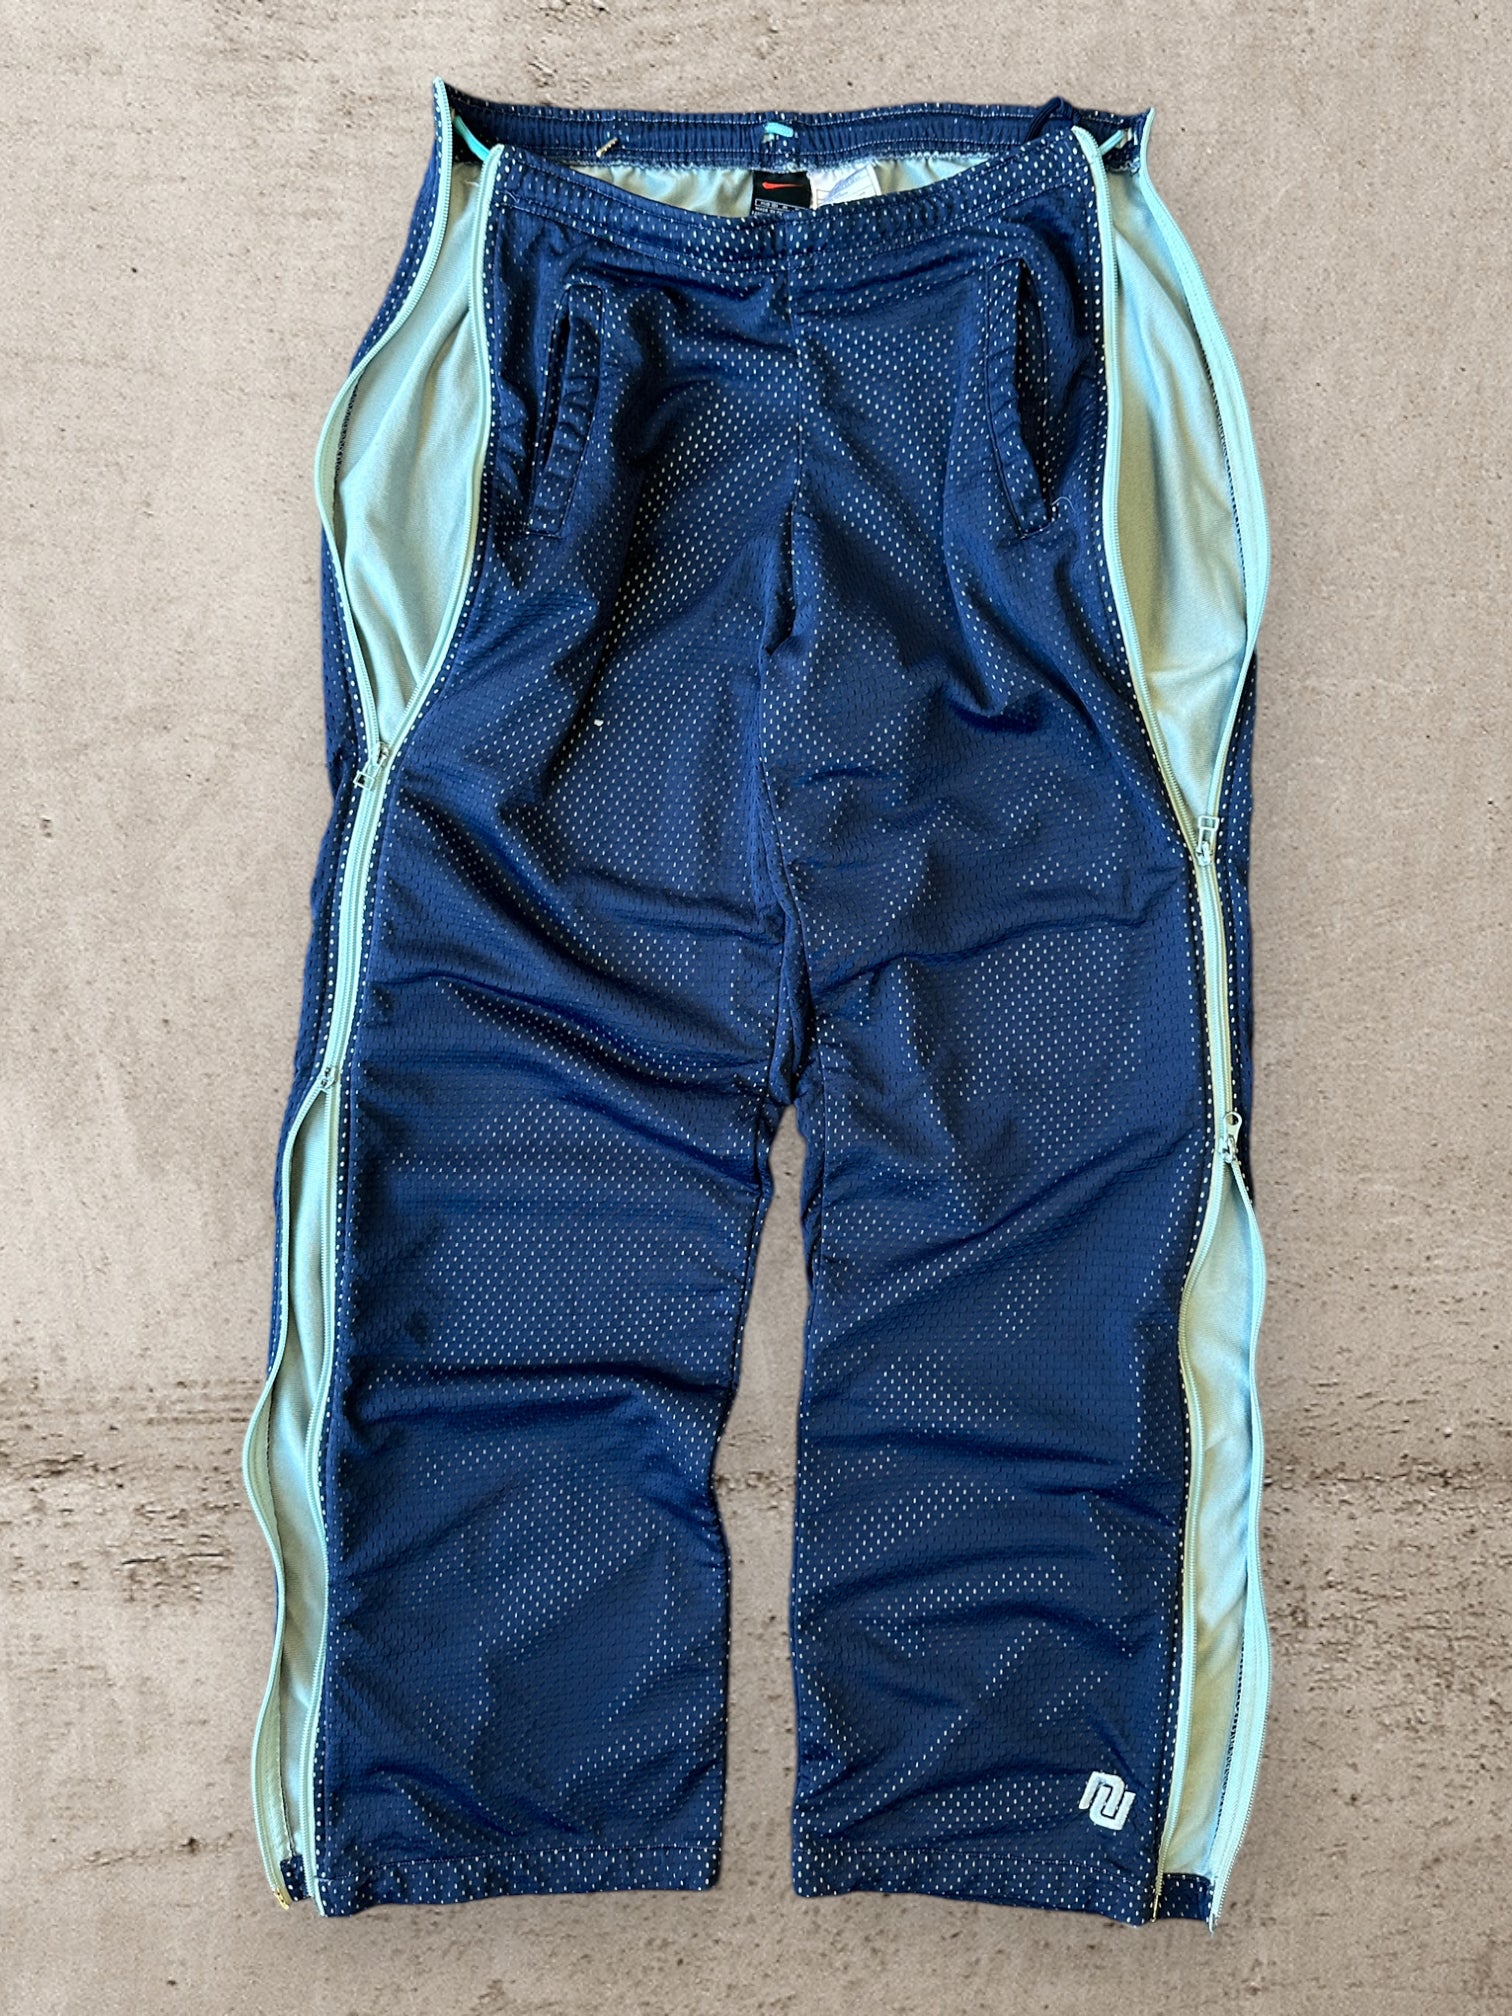 90s Nike Navy Blue & Teal Side Zip Mesh Pants - 32x31